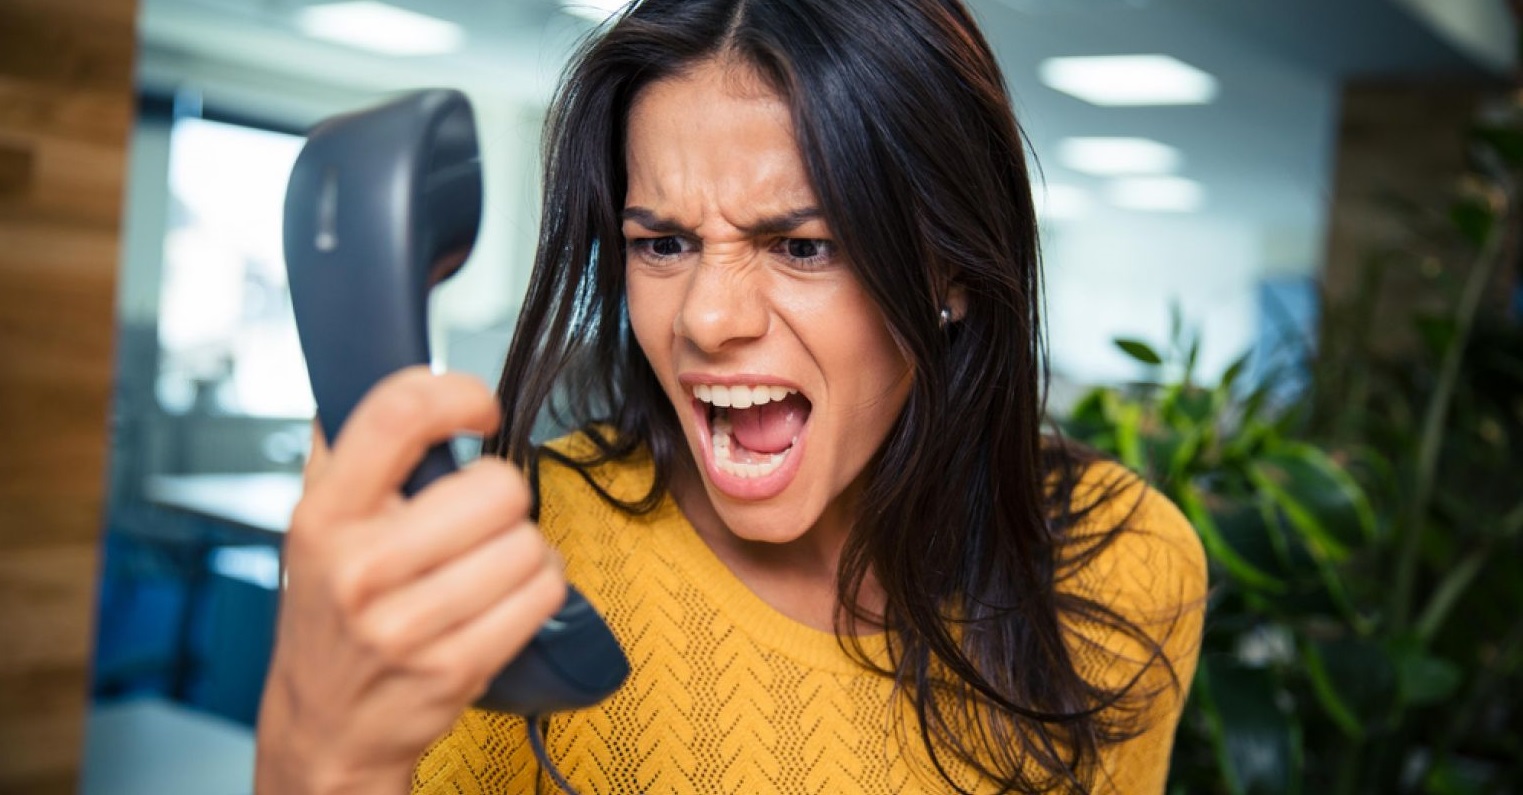 عصبانیت پشت تلفن - روش های کنترل خشم